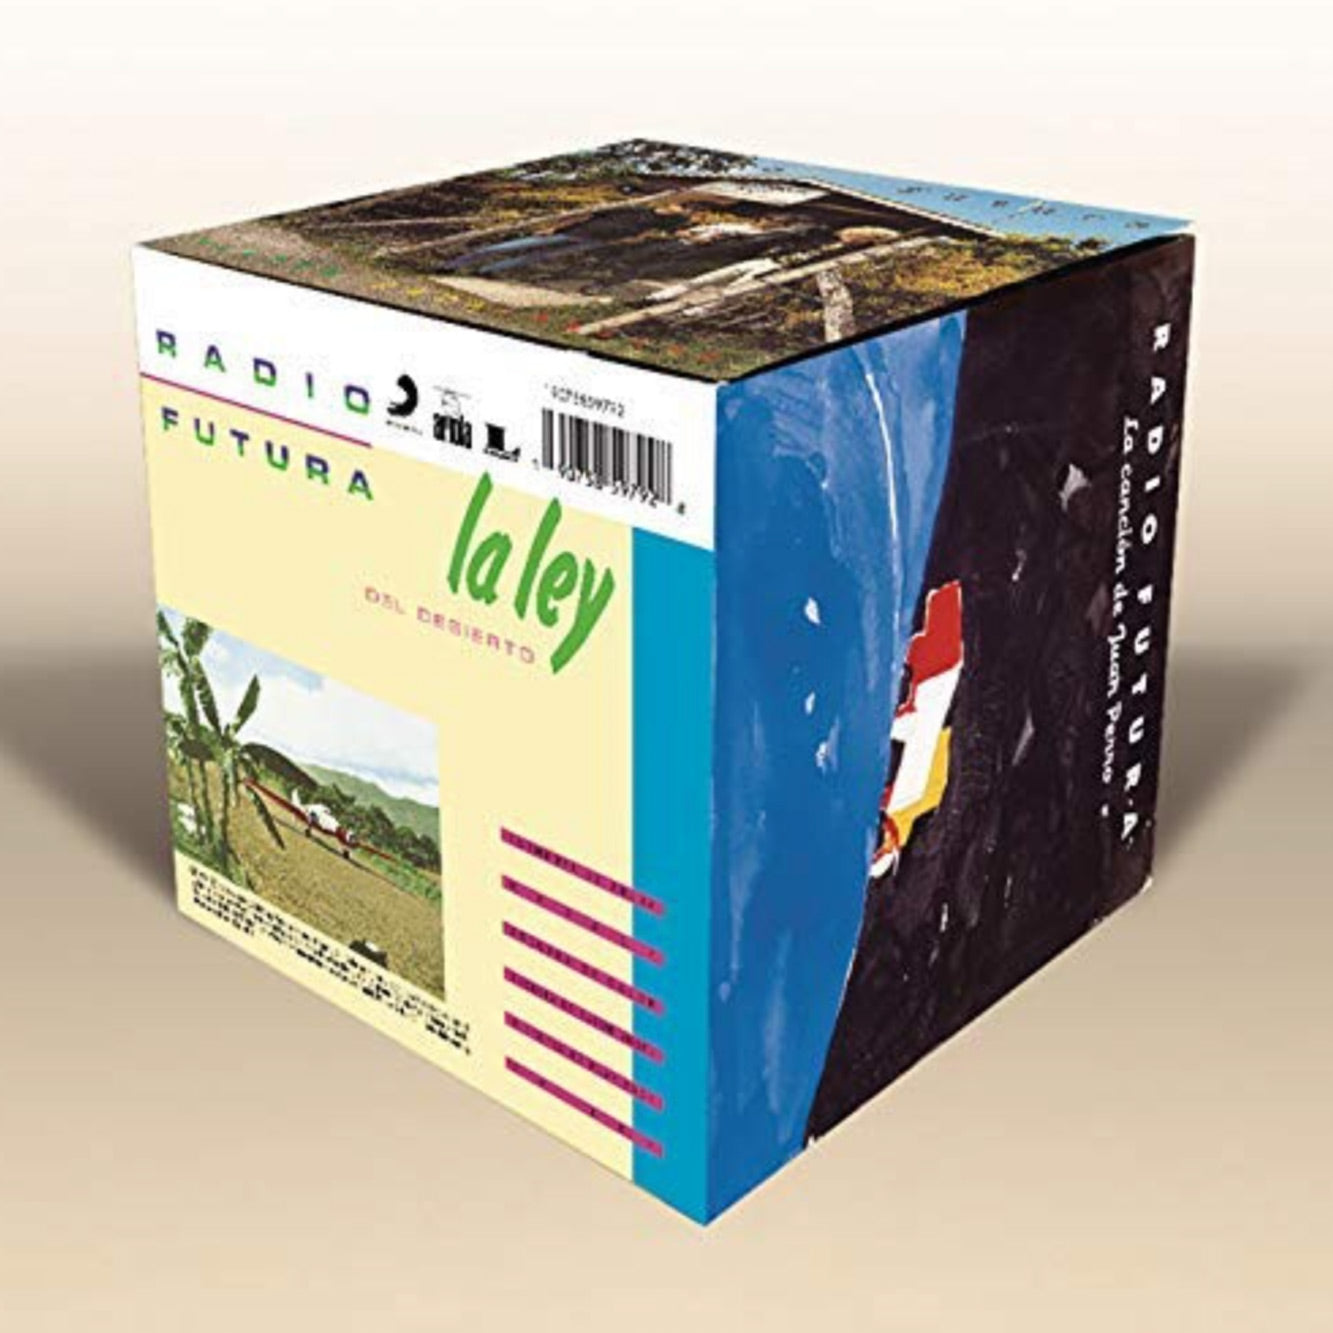 Radio Futura - CD Box Set 1984-1992